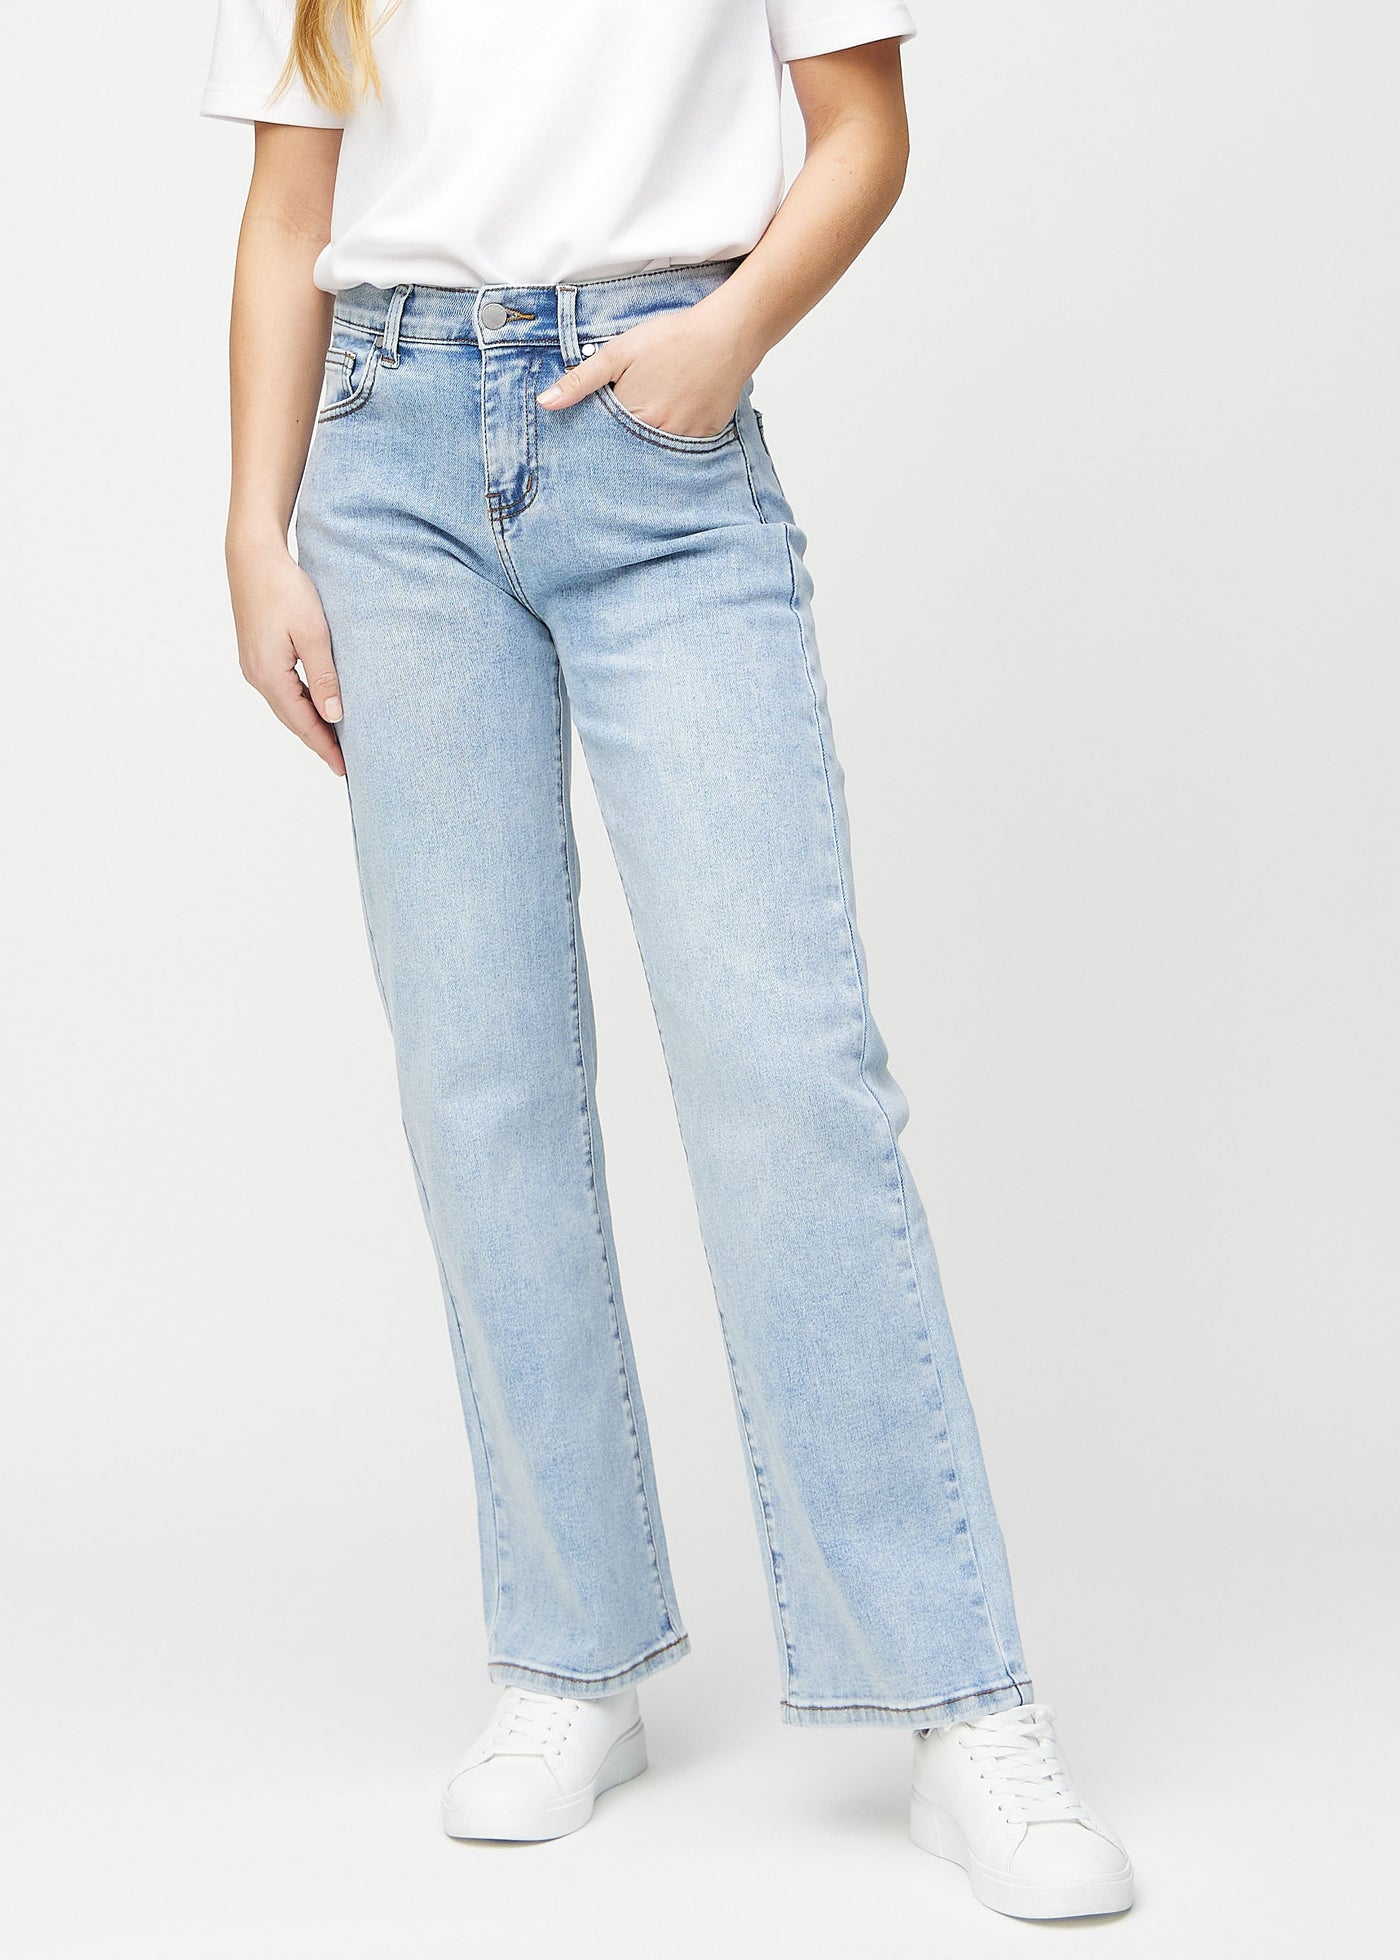 Lys denim loose jeans, modelnavn Waves, som er løstsiddende med masser af vidde i benene, set forfra.